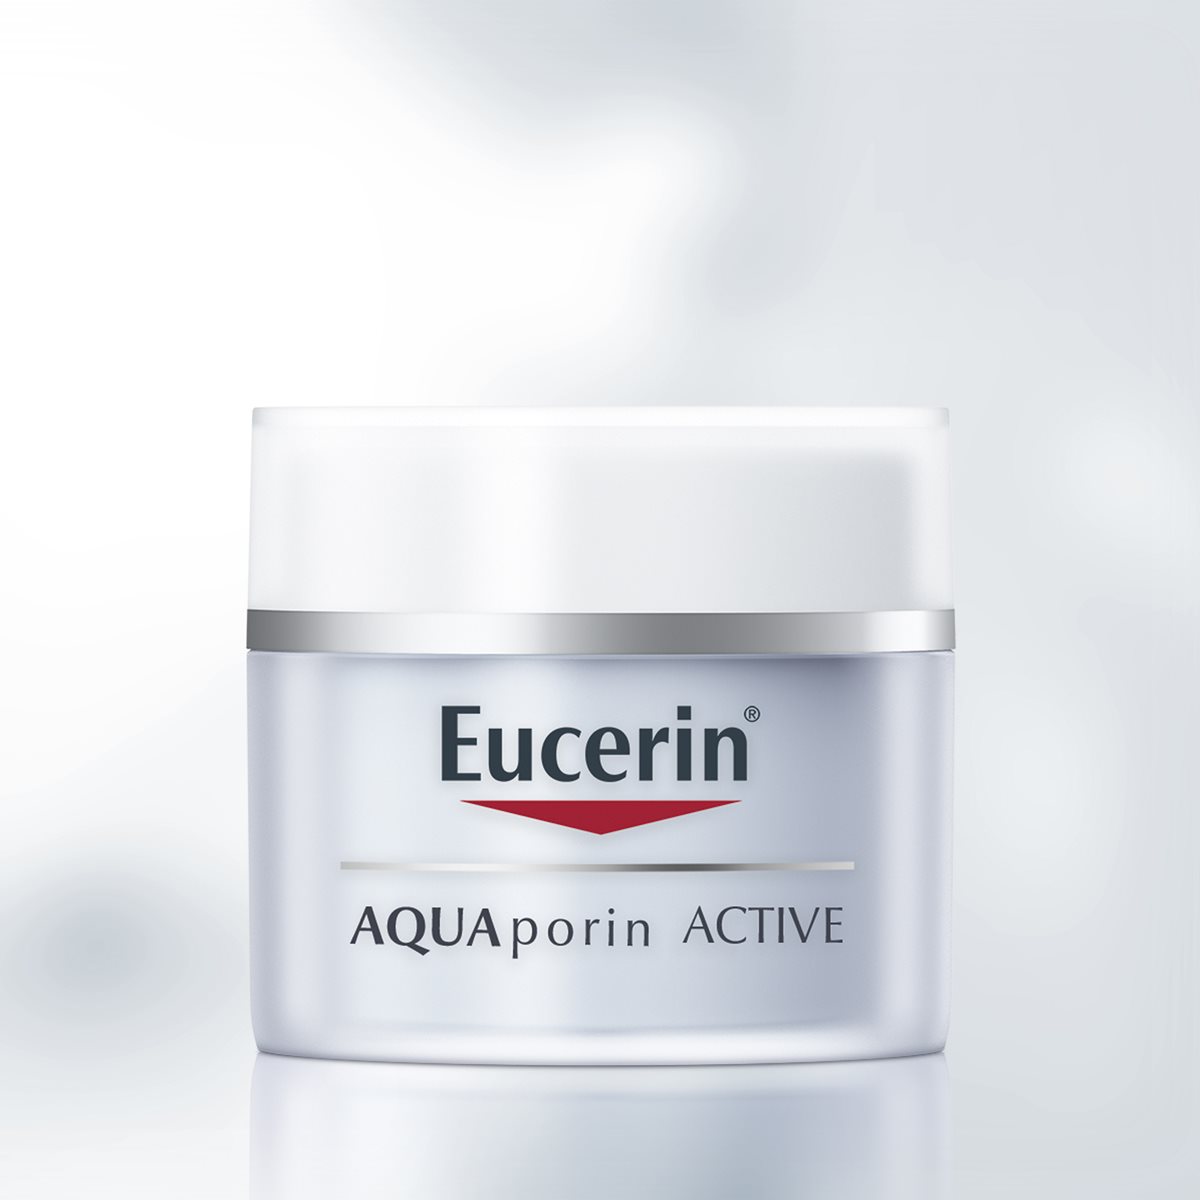 Eucerin AQUAporin ACTIVE pour Peau Sèche